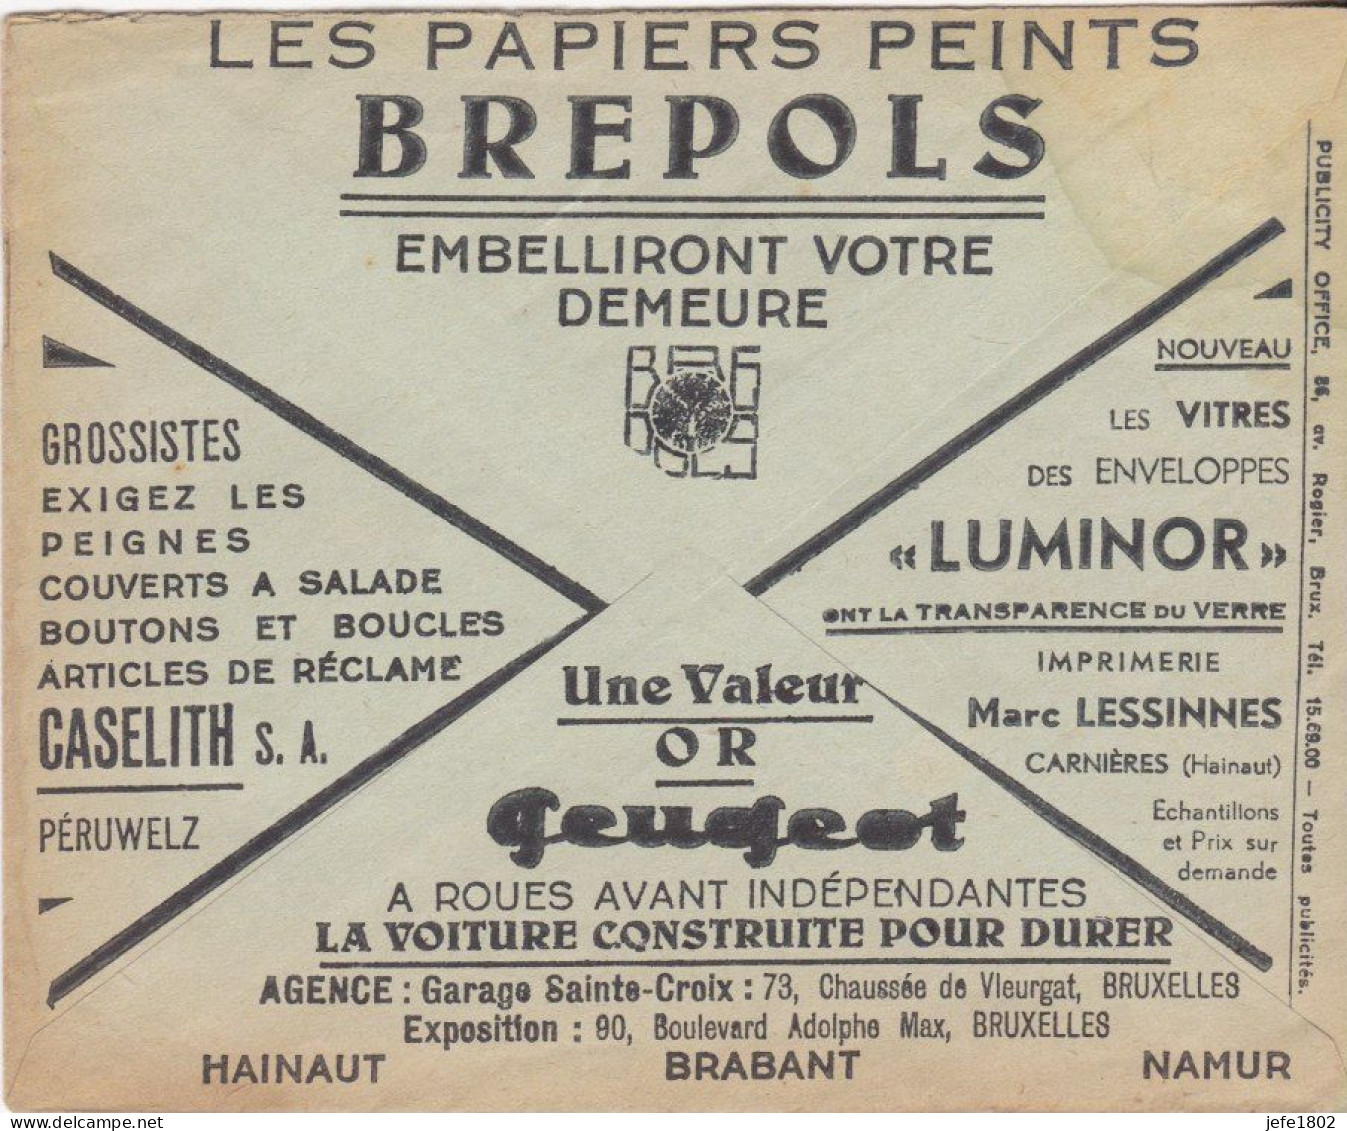 Peugeot à Roues Avant Indépendantes / Brepols / Gaselith / Luminor - Cartes Postales 1934-1951